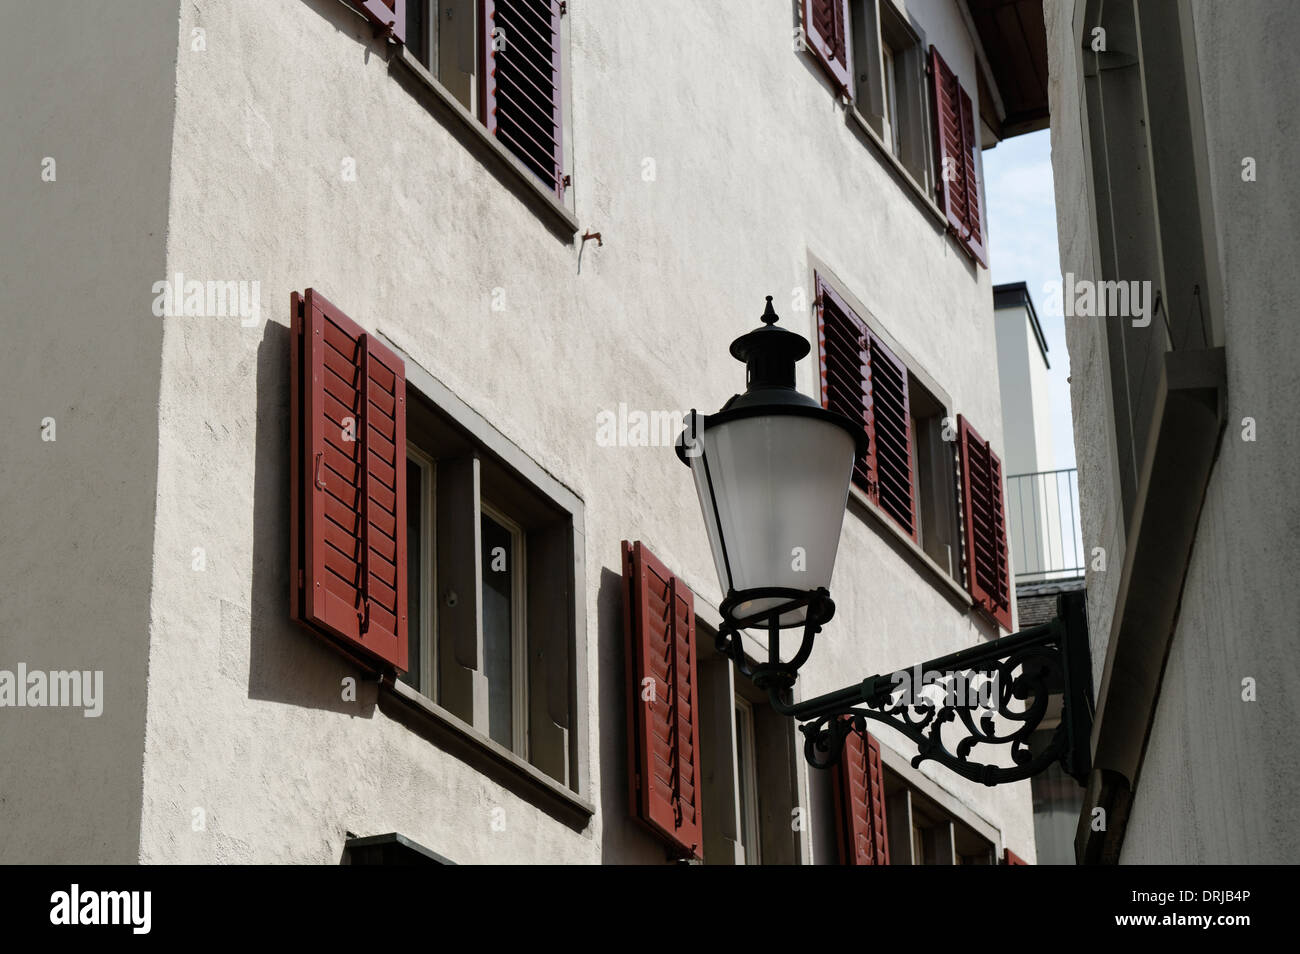 Alten Stil Straßenlaterne mit weißen Wand und braune Vorhänge hinter sich,  Zürich, Schweiz Stockfotografie - Alamy